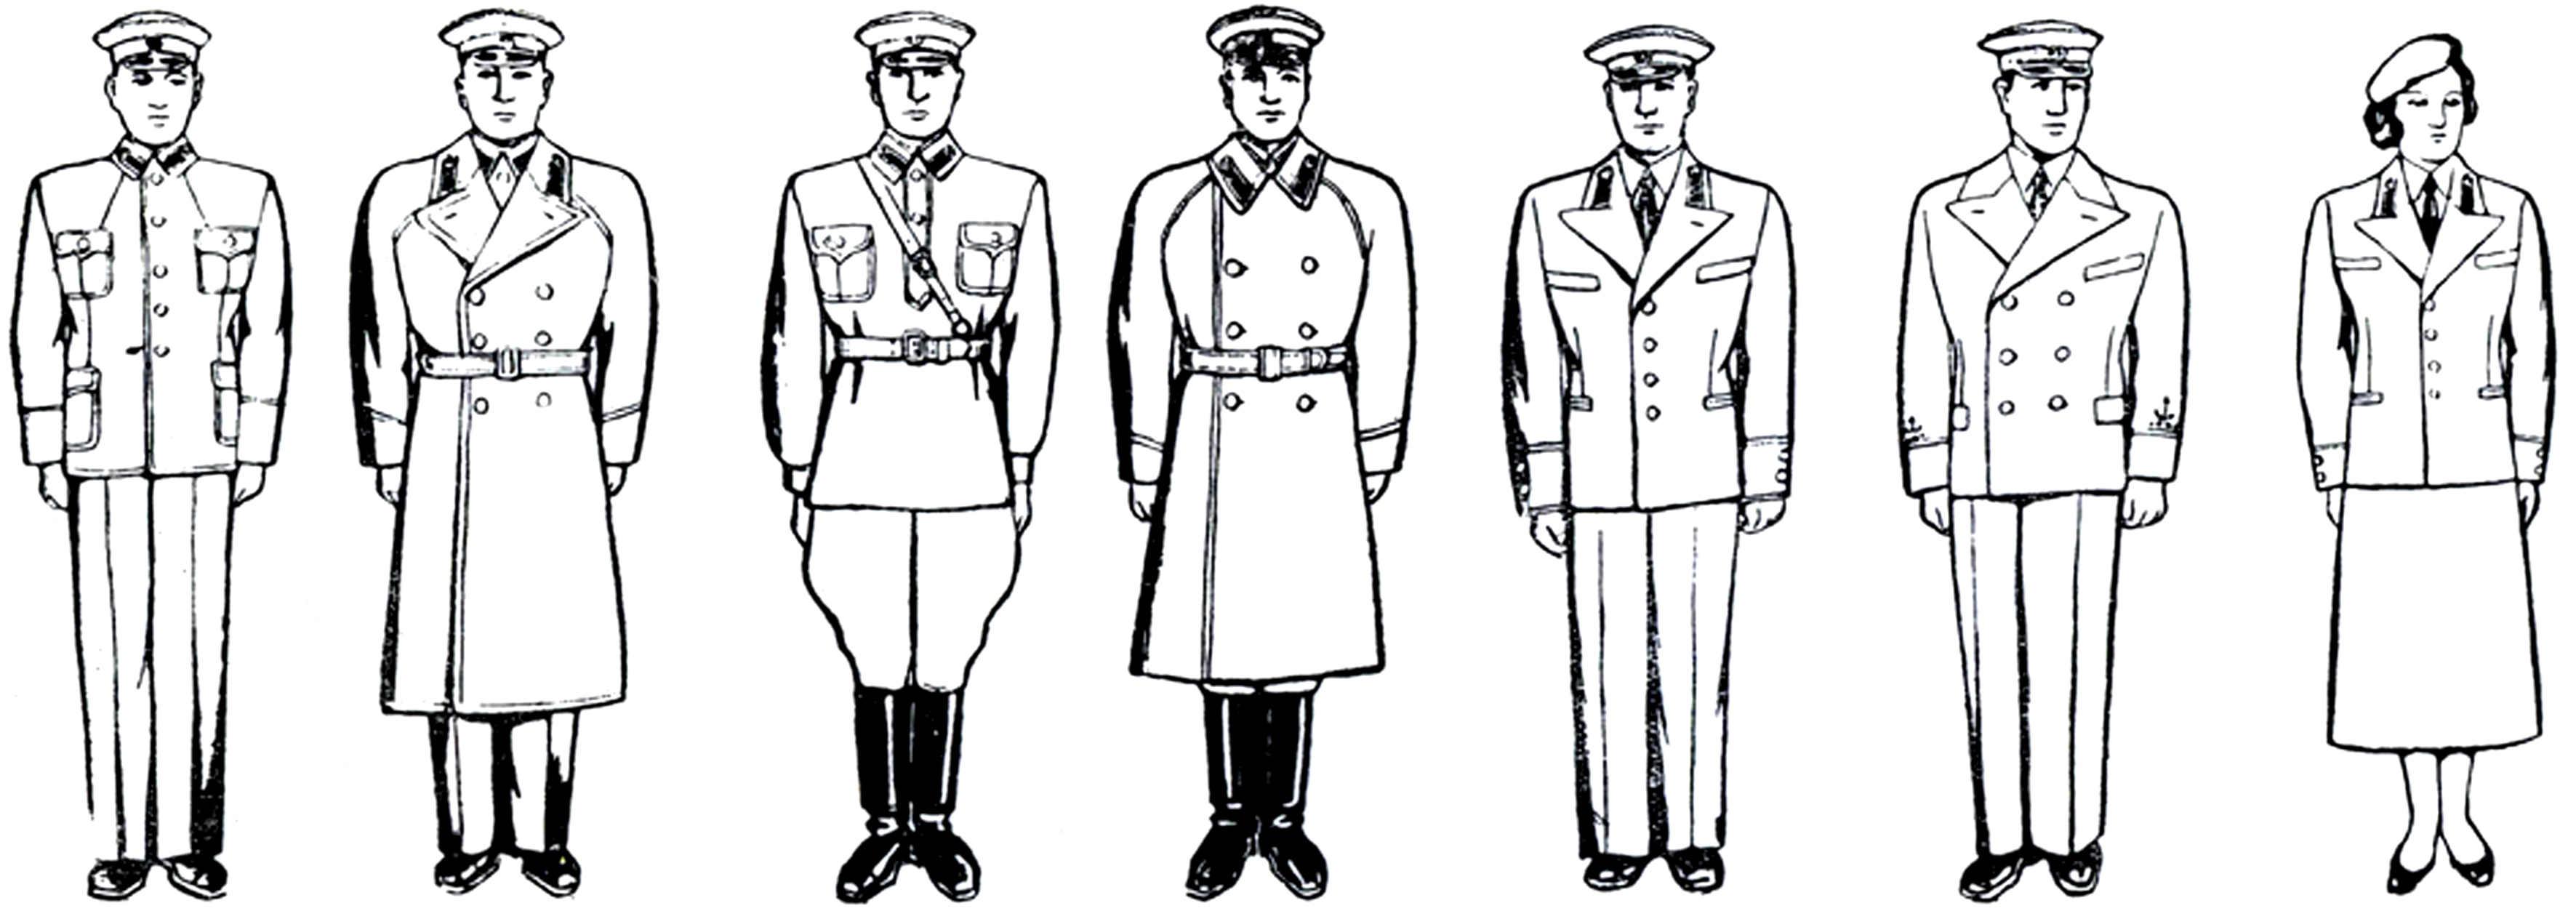 Петлицы милиции 1936 года